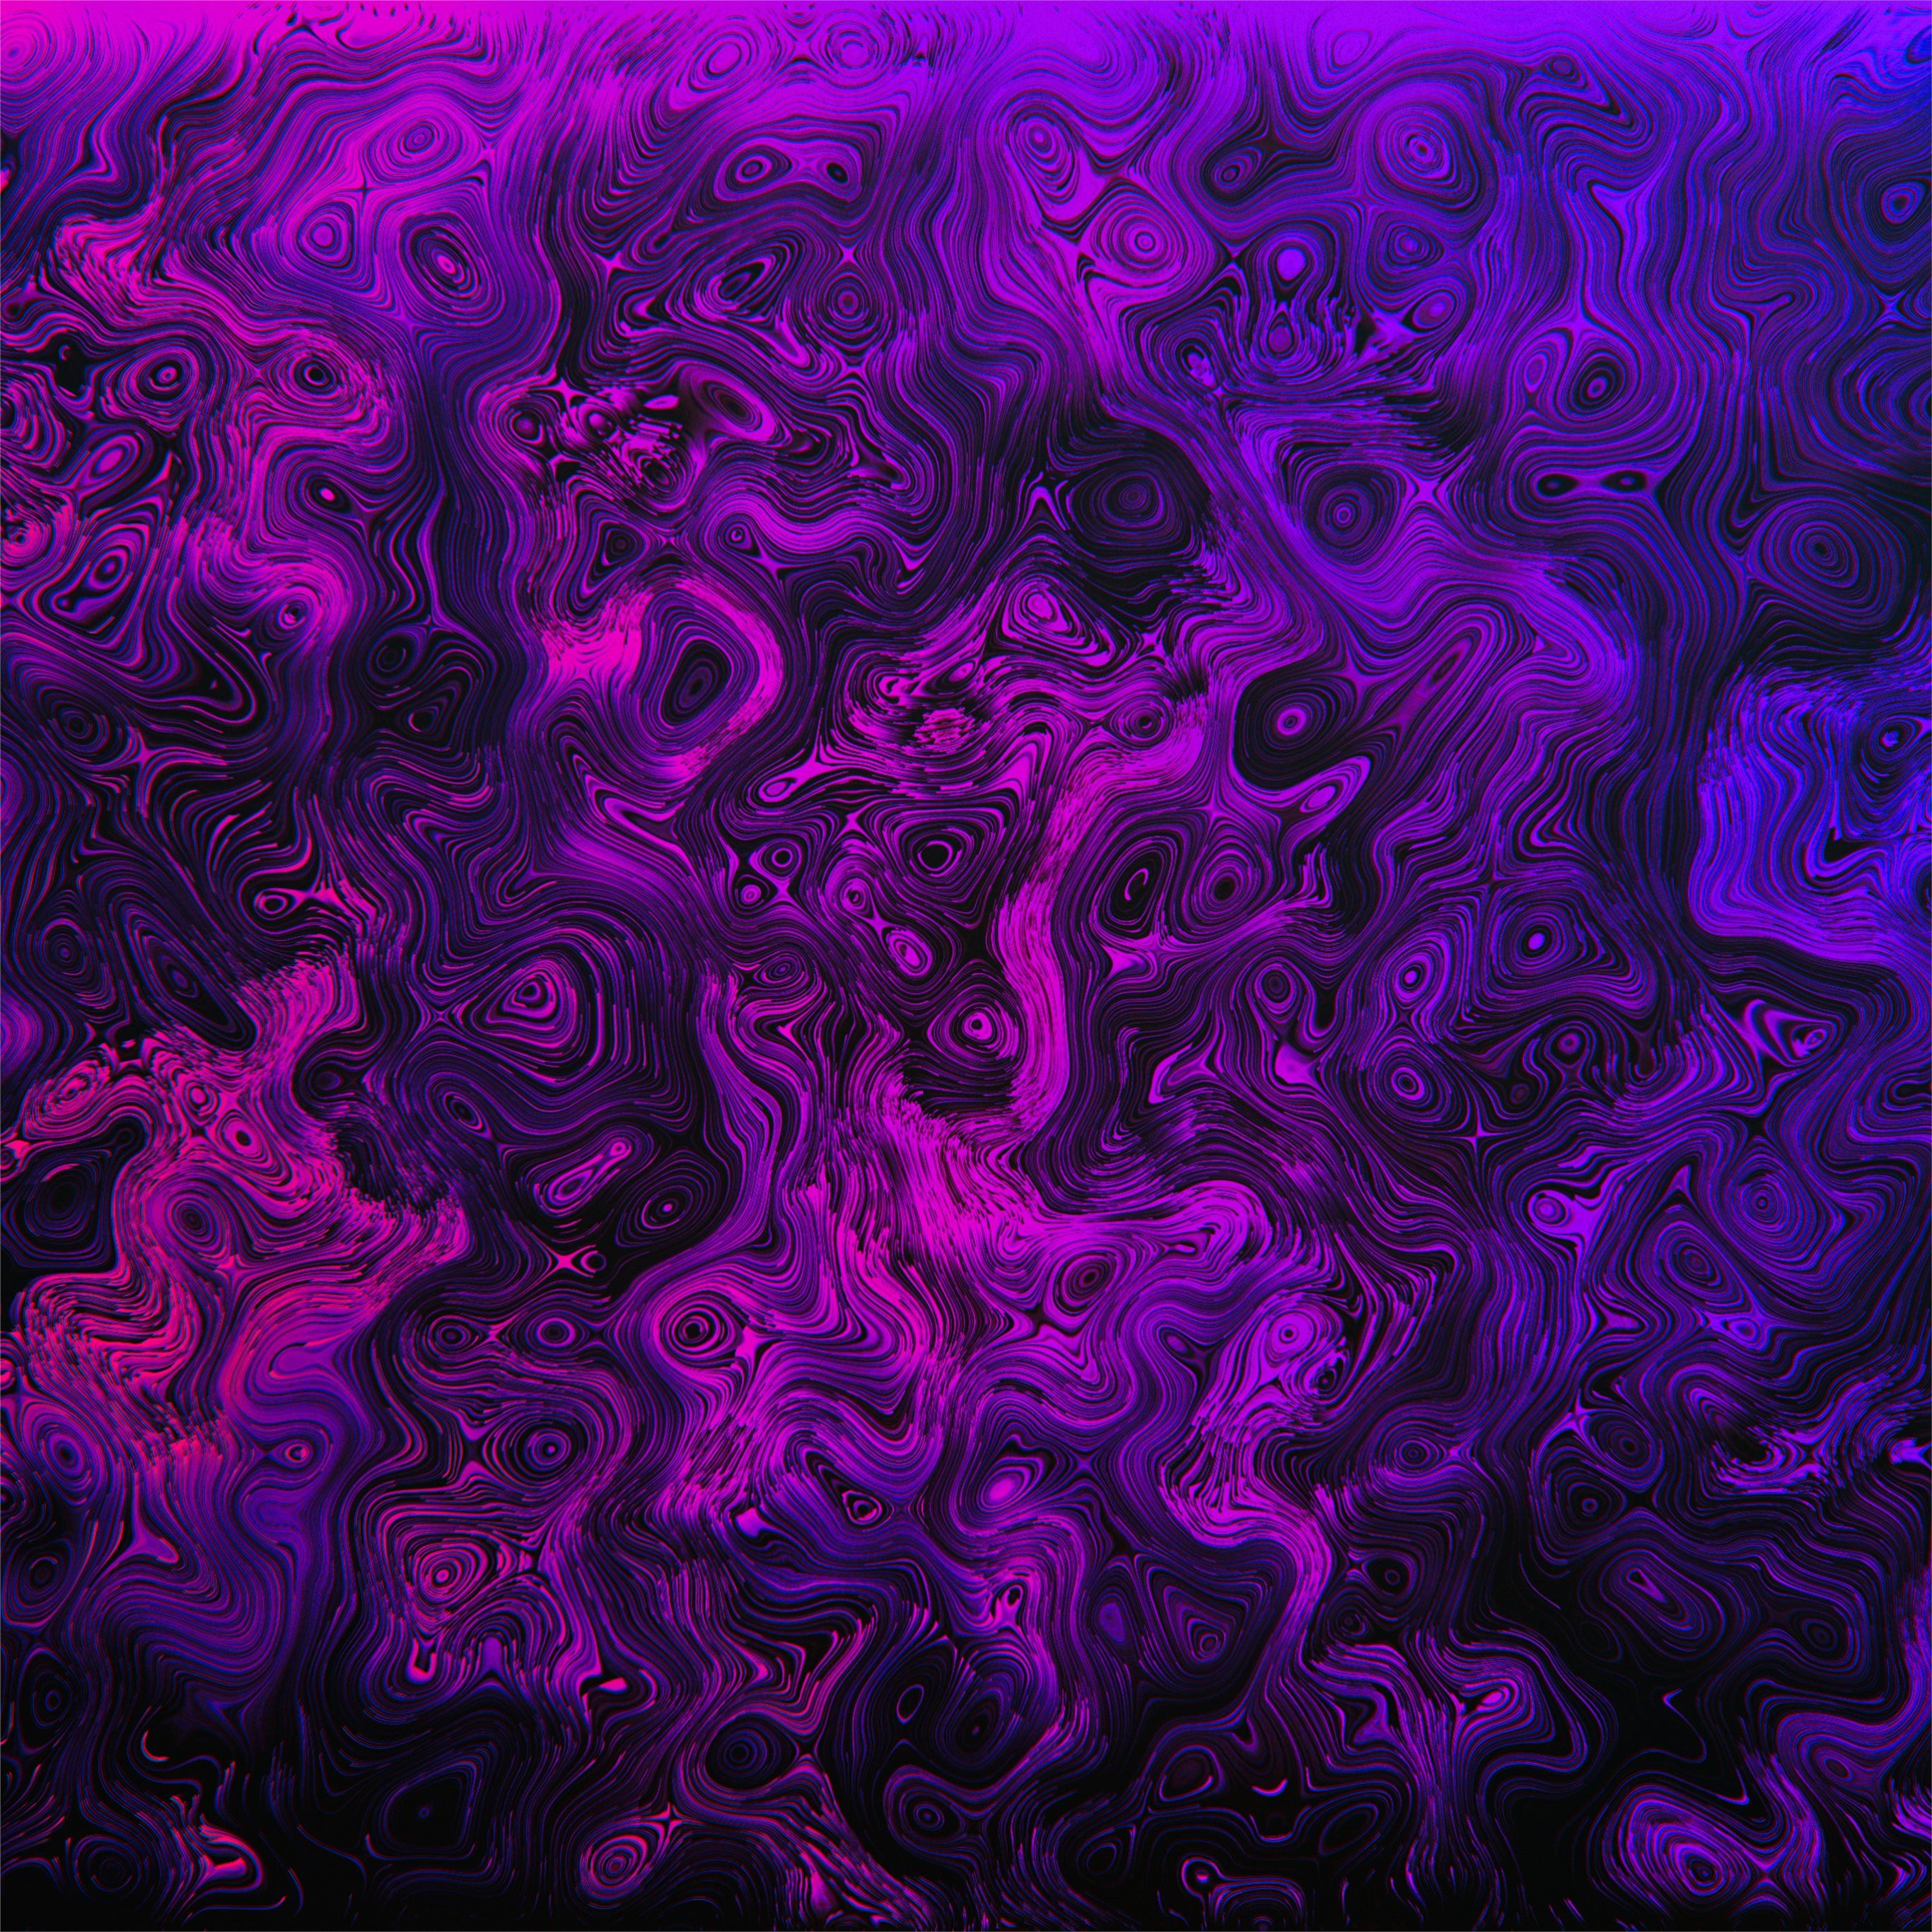 Aesthetic purple wallpaper  Purple wallpaper Purple aesthetic background  Light purple wallpaper